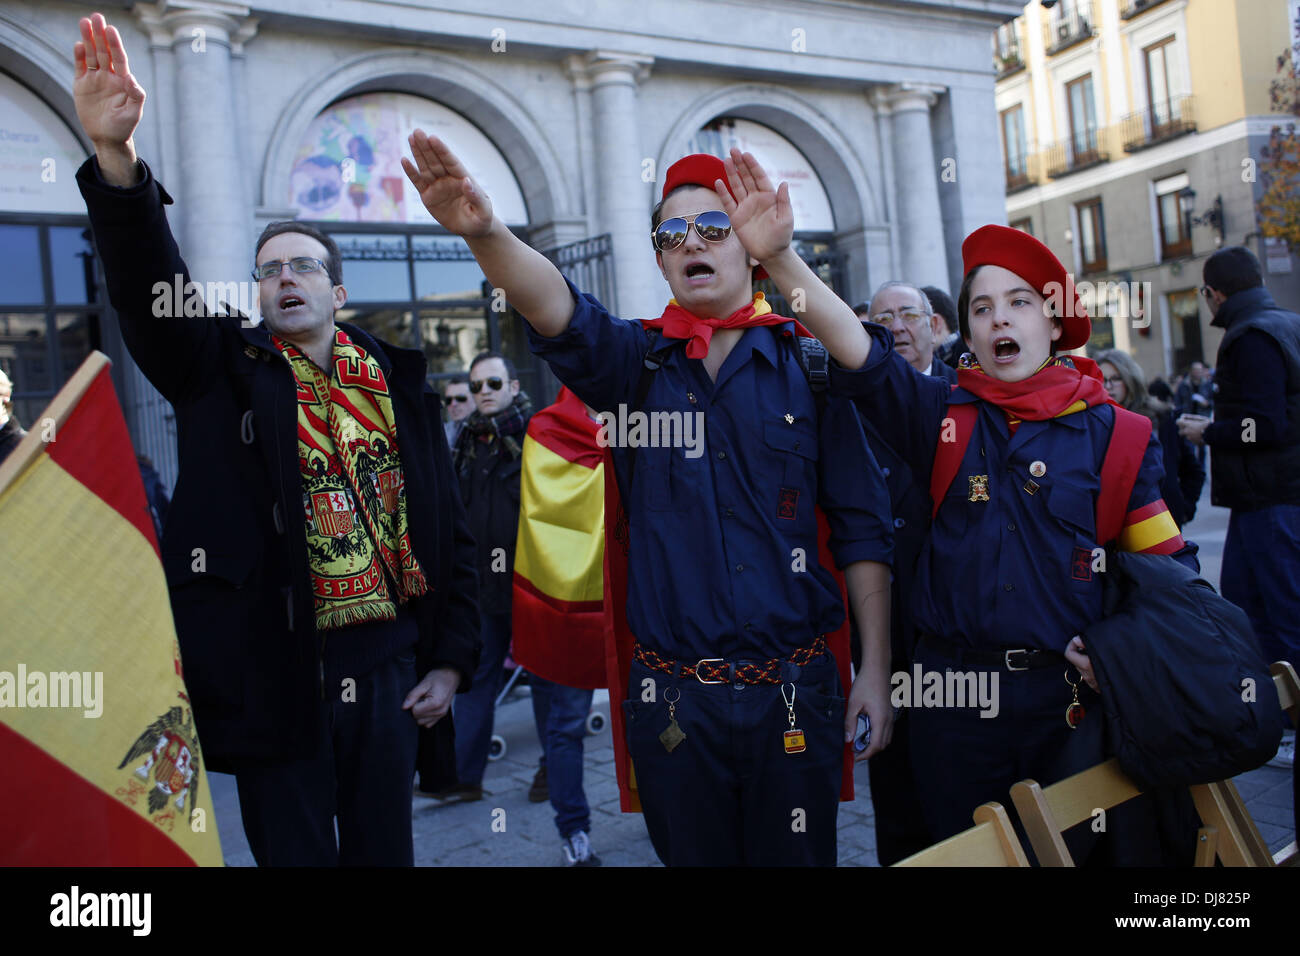 Madrid, España. 24 Nov, 2013. Los manifestantes y los niños vestidos de  traje de la falange hacen el saludo fascista como cantan ''El cara al sol''  durante una protesta que conmemora el